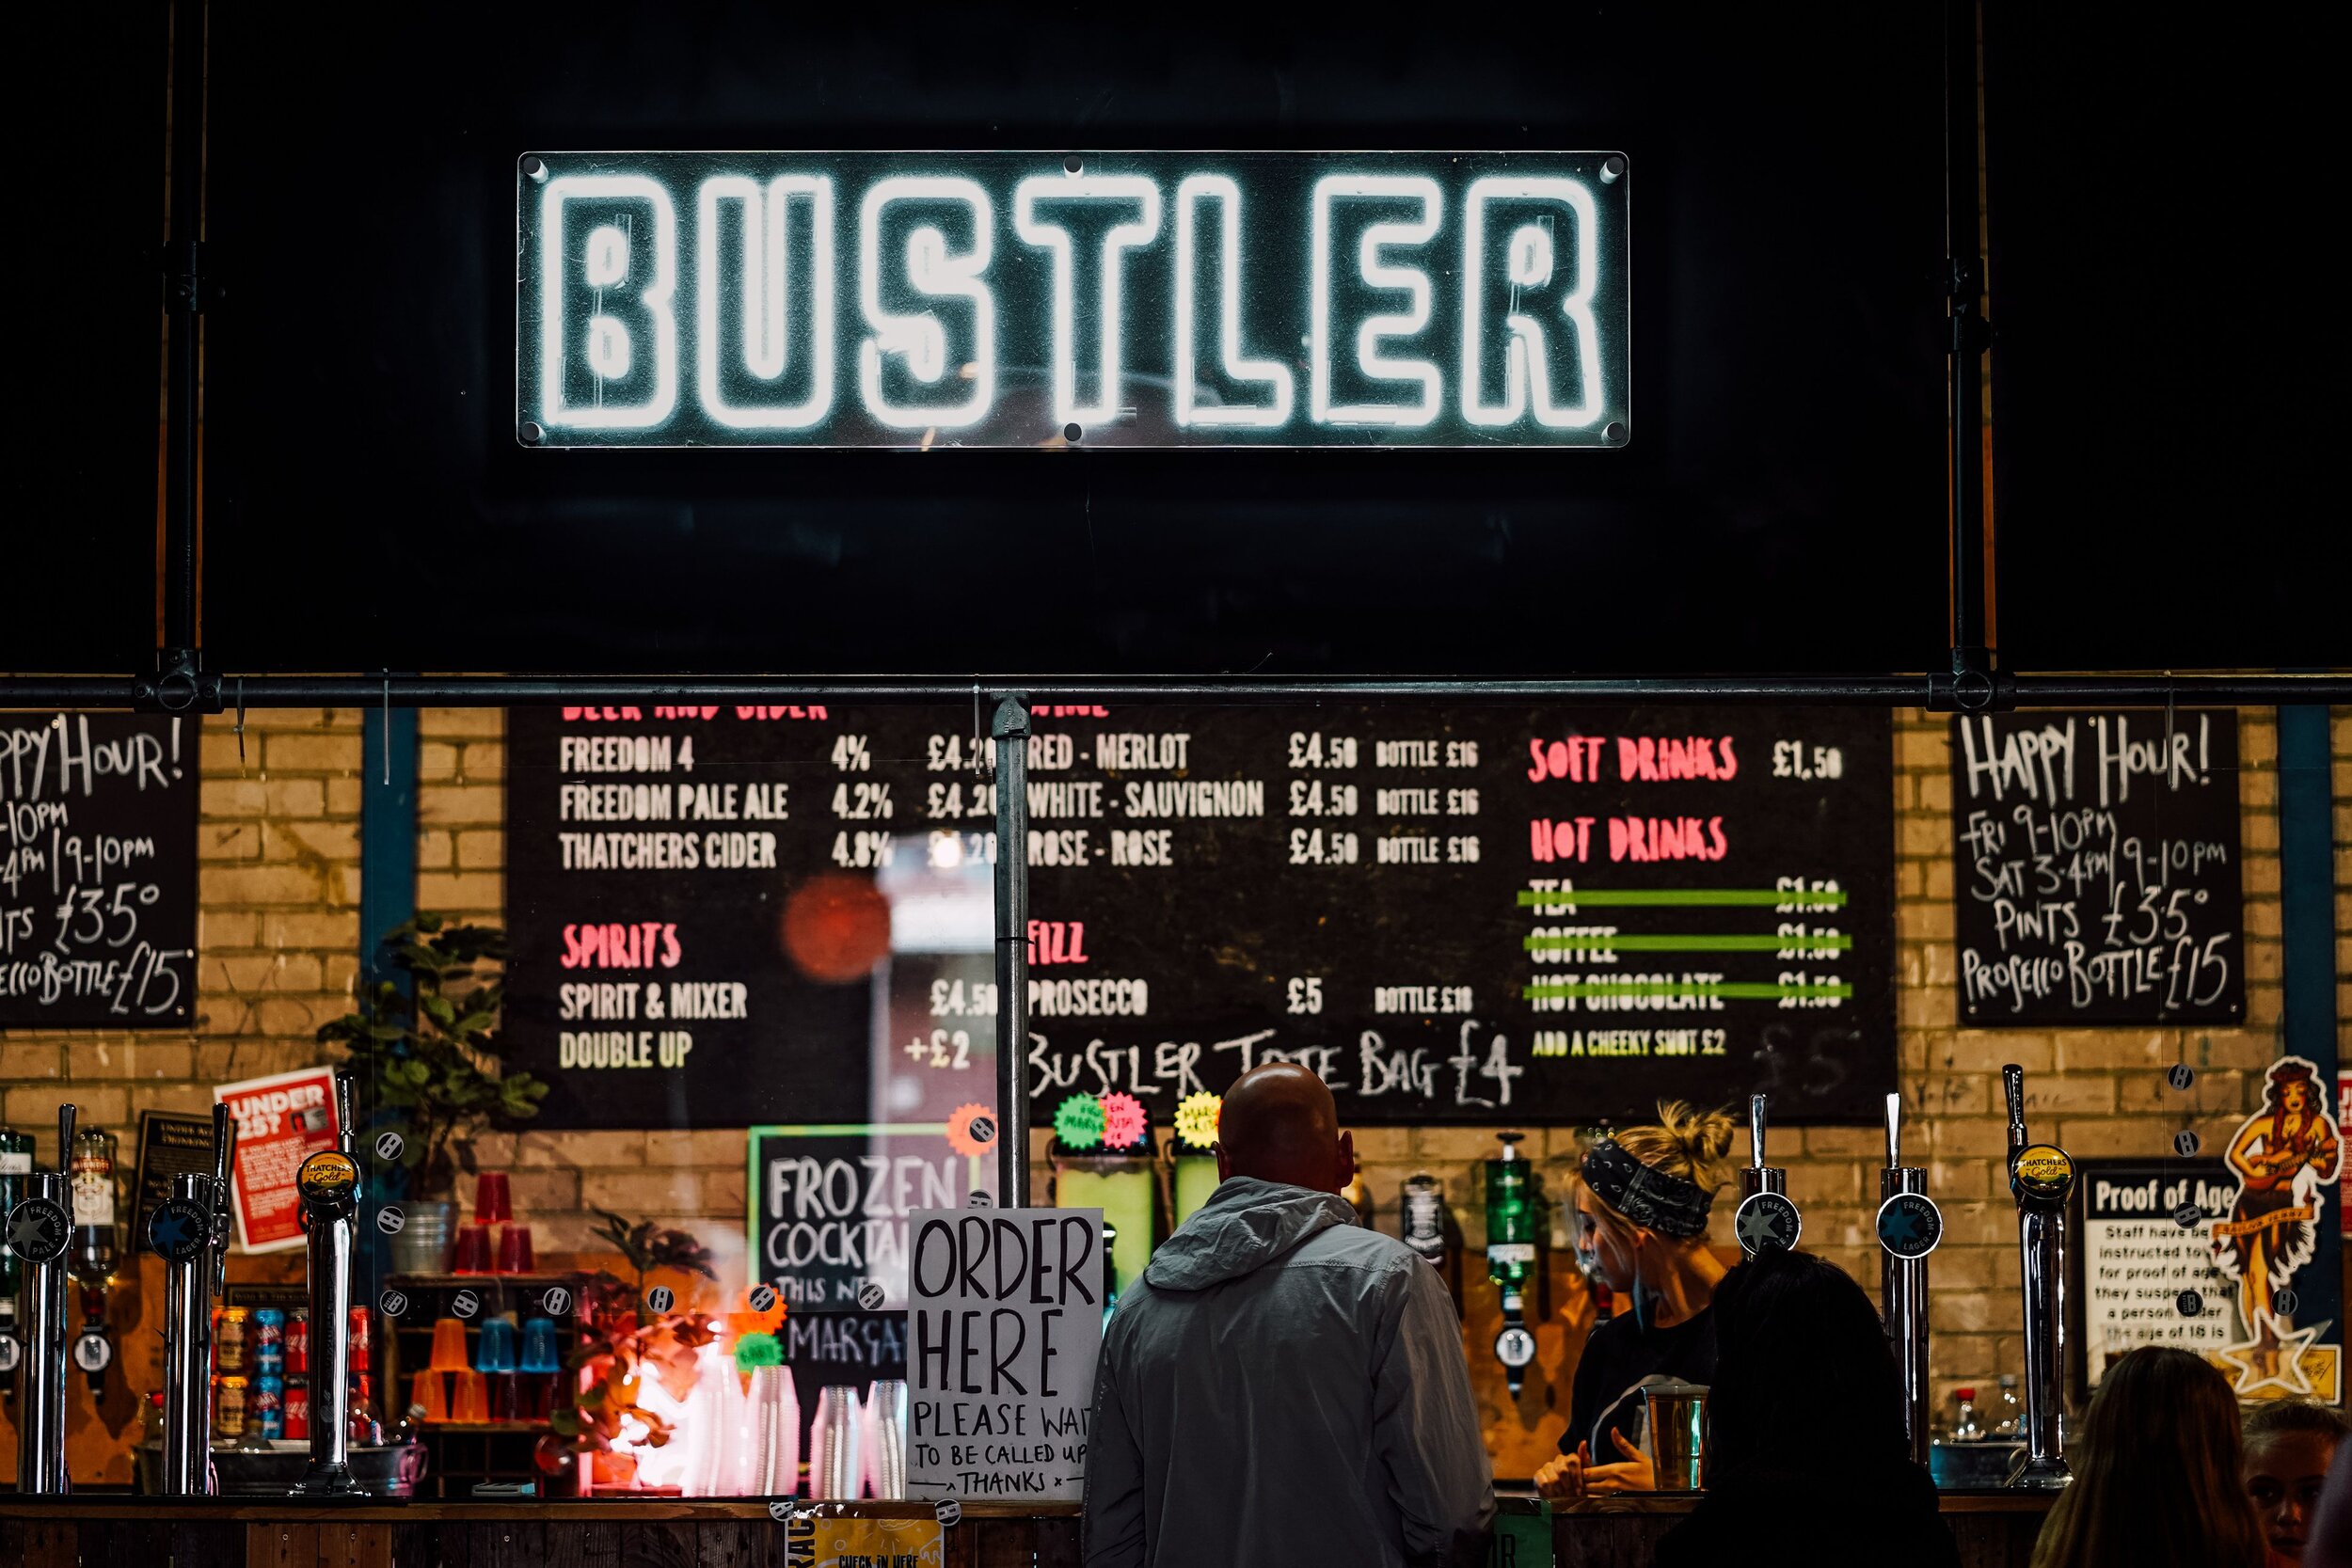 Bustler brings in changes